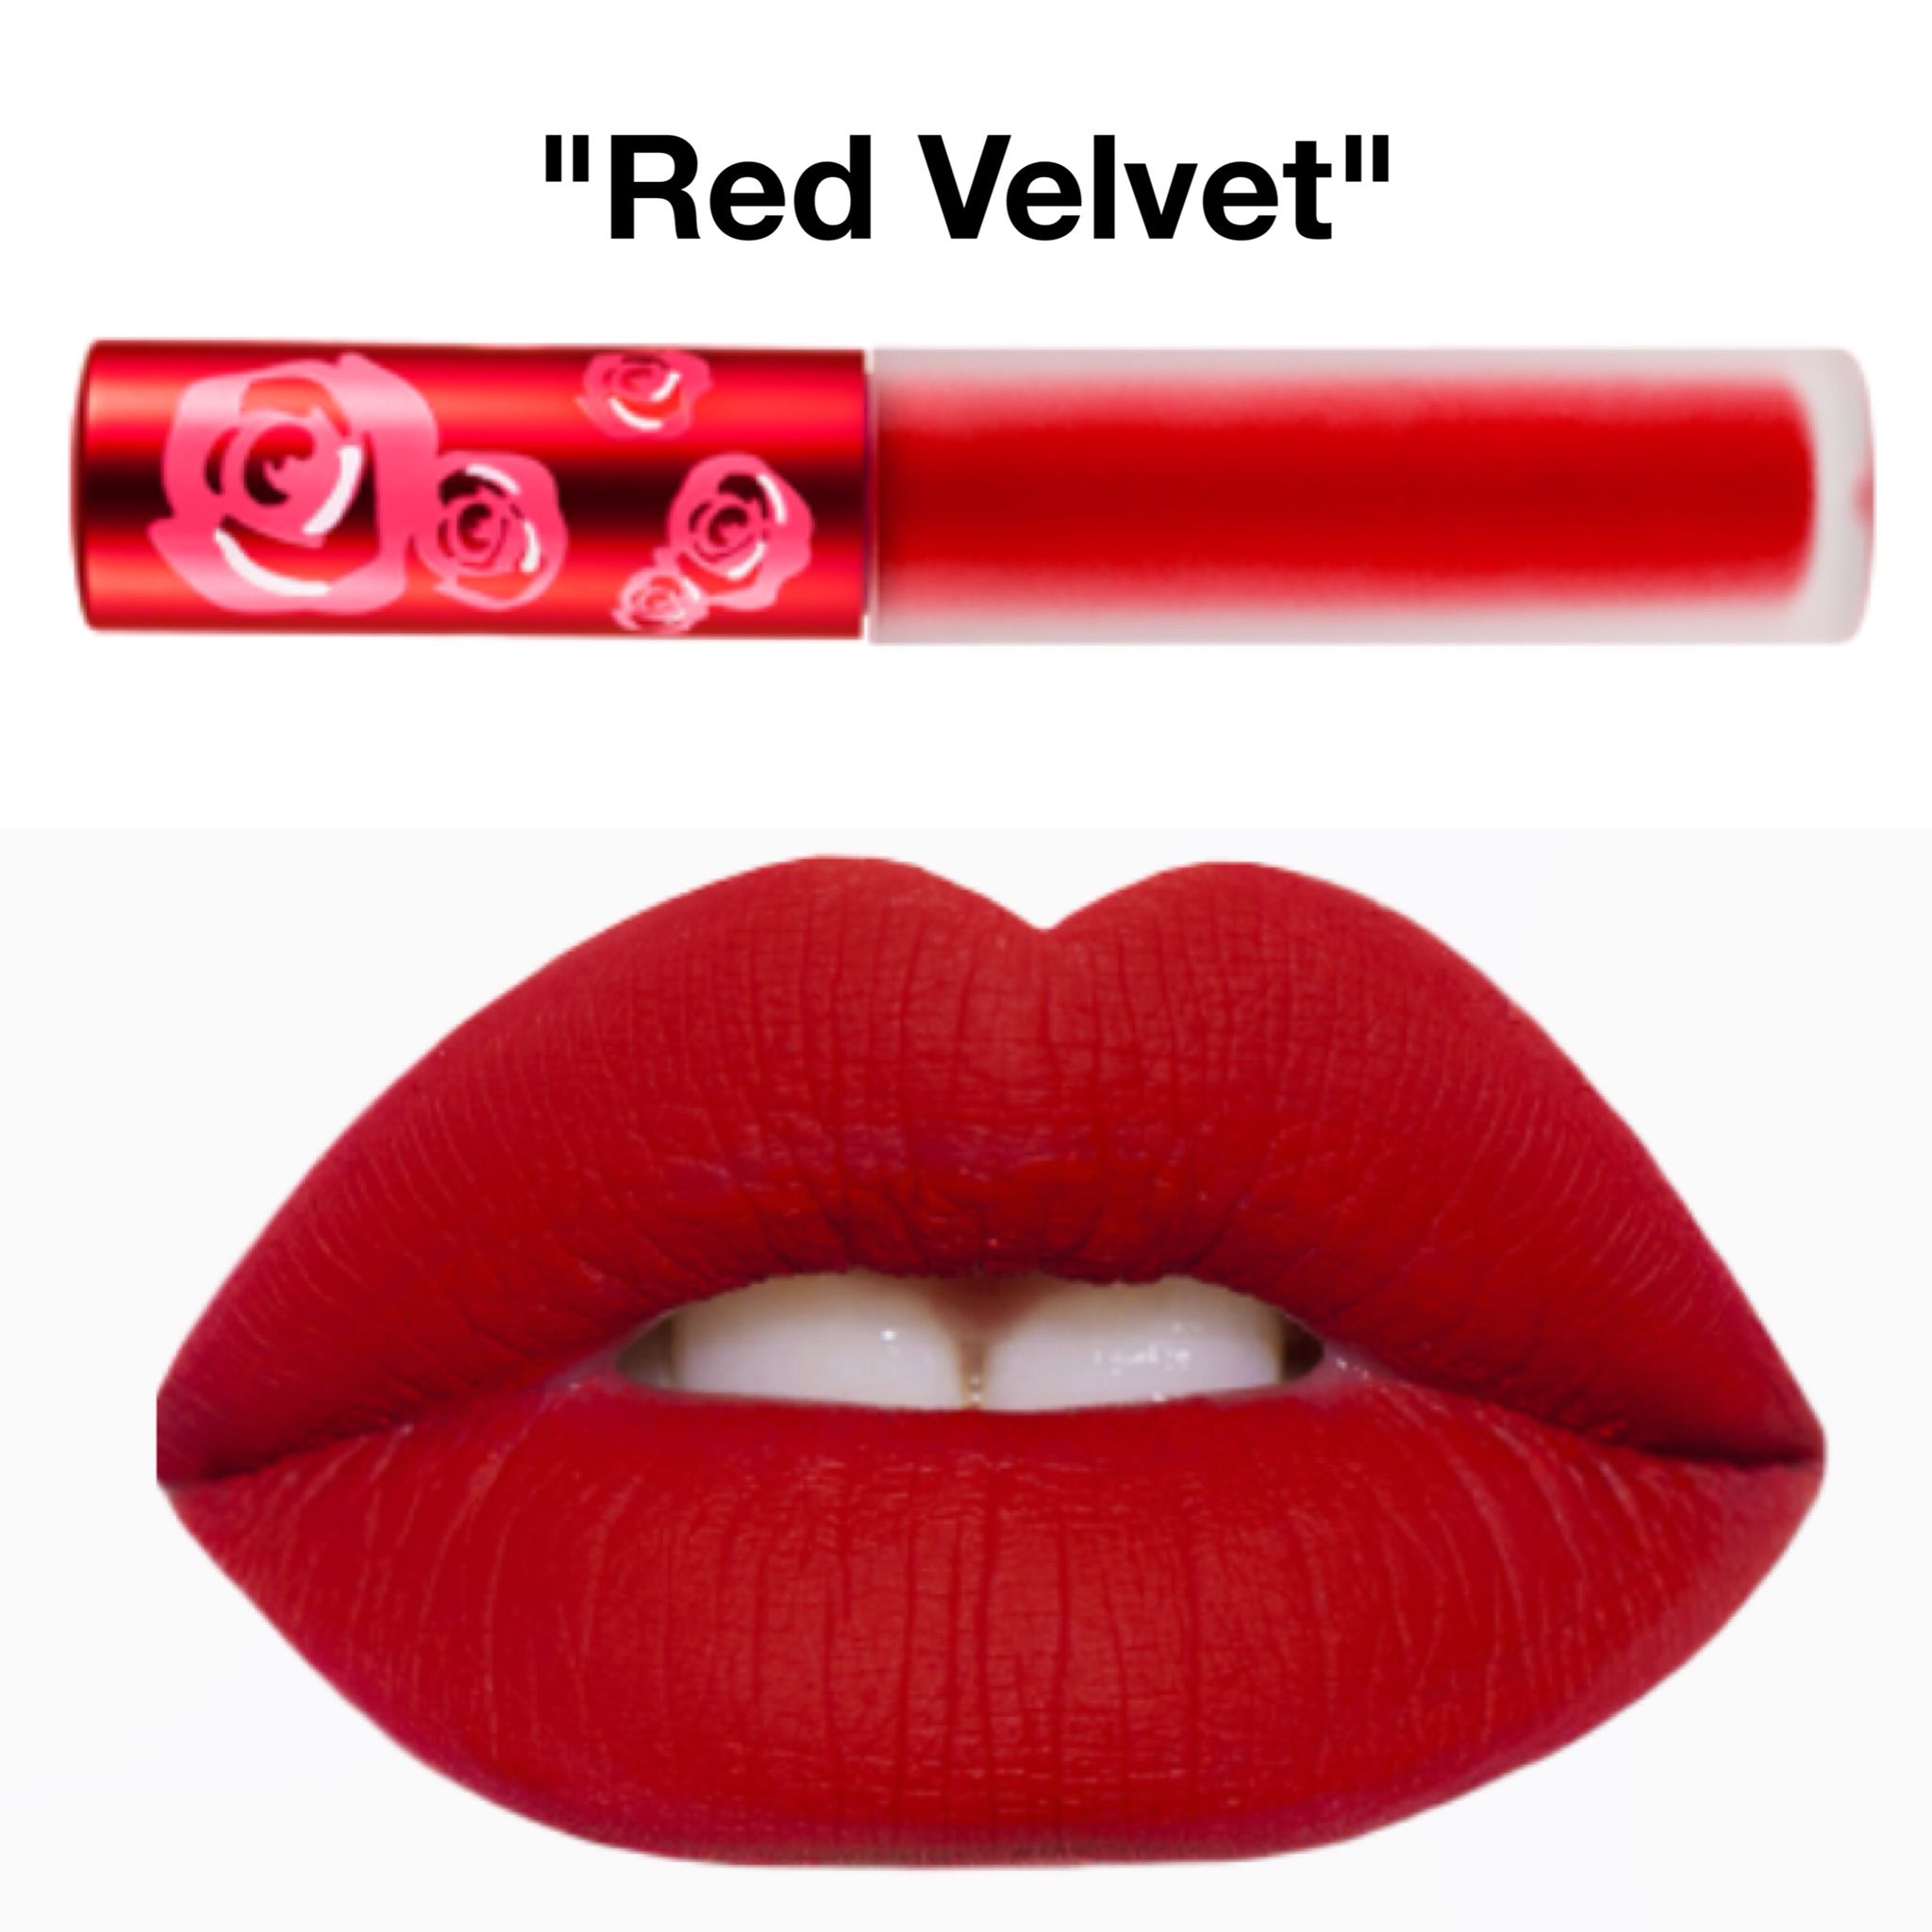 Lime Crime Velvetines Liquid Matte Lipstick - Red Velvet - True Red - French Vanilla Scent - Long-Lasting Velvety Matte Lipstick